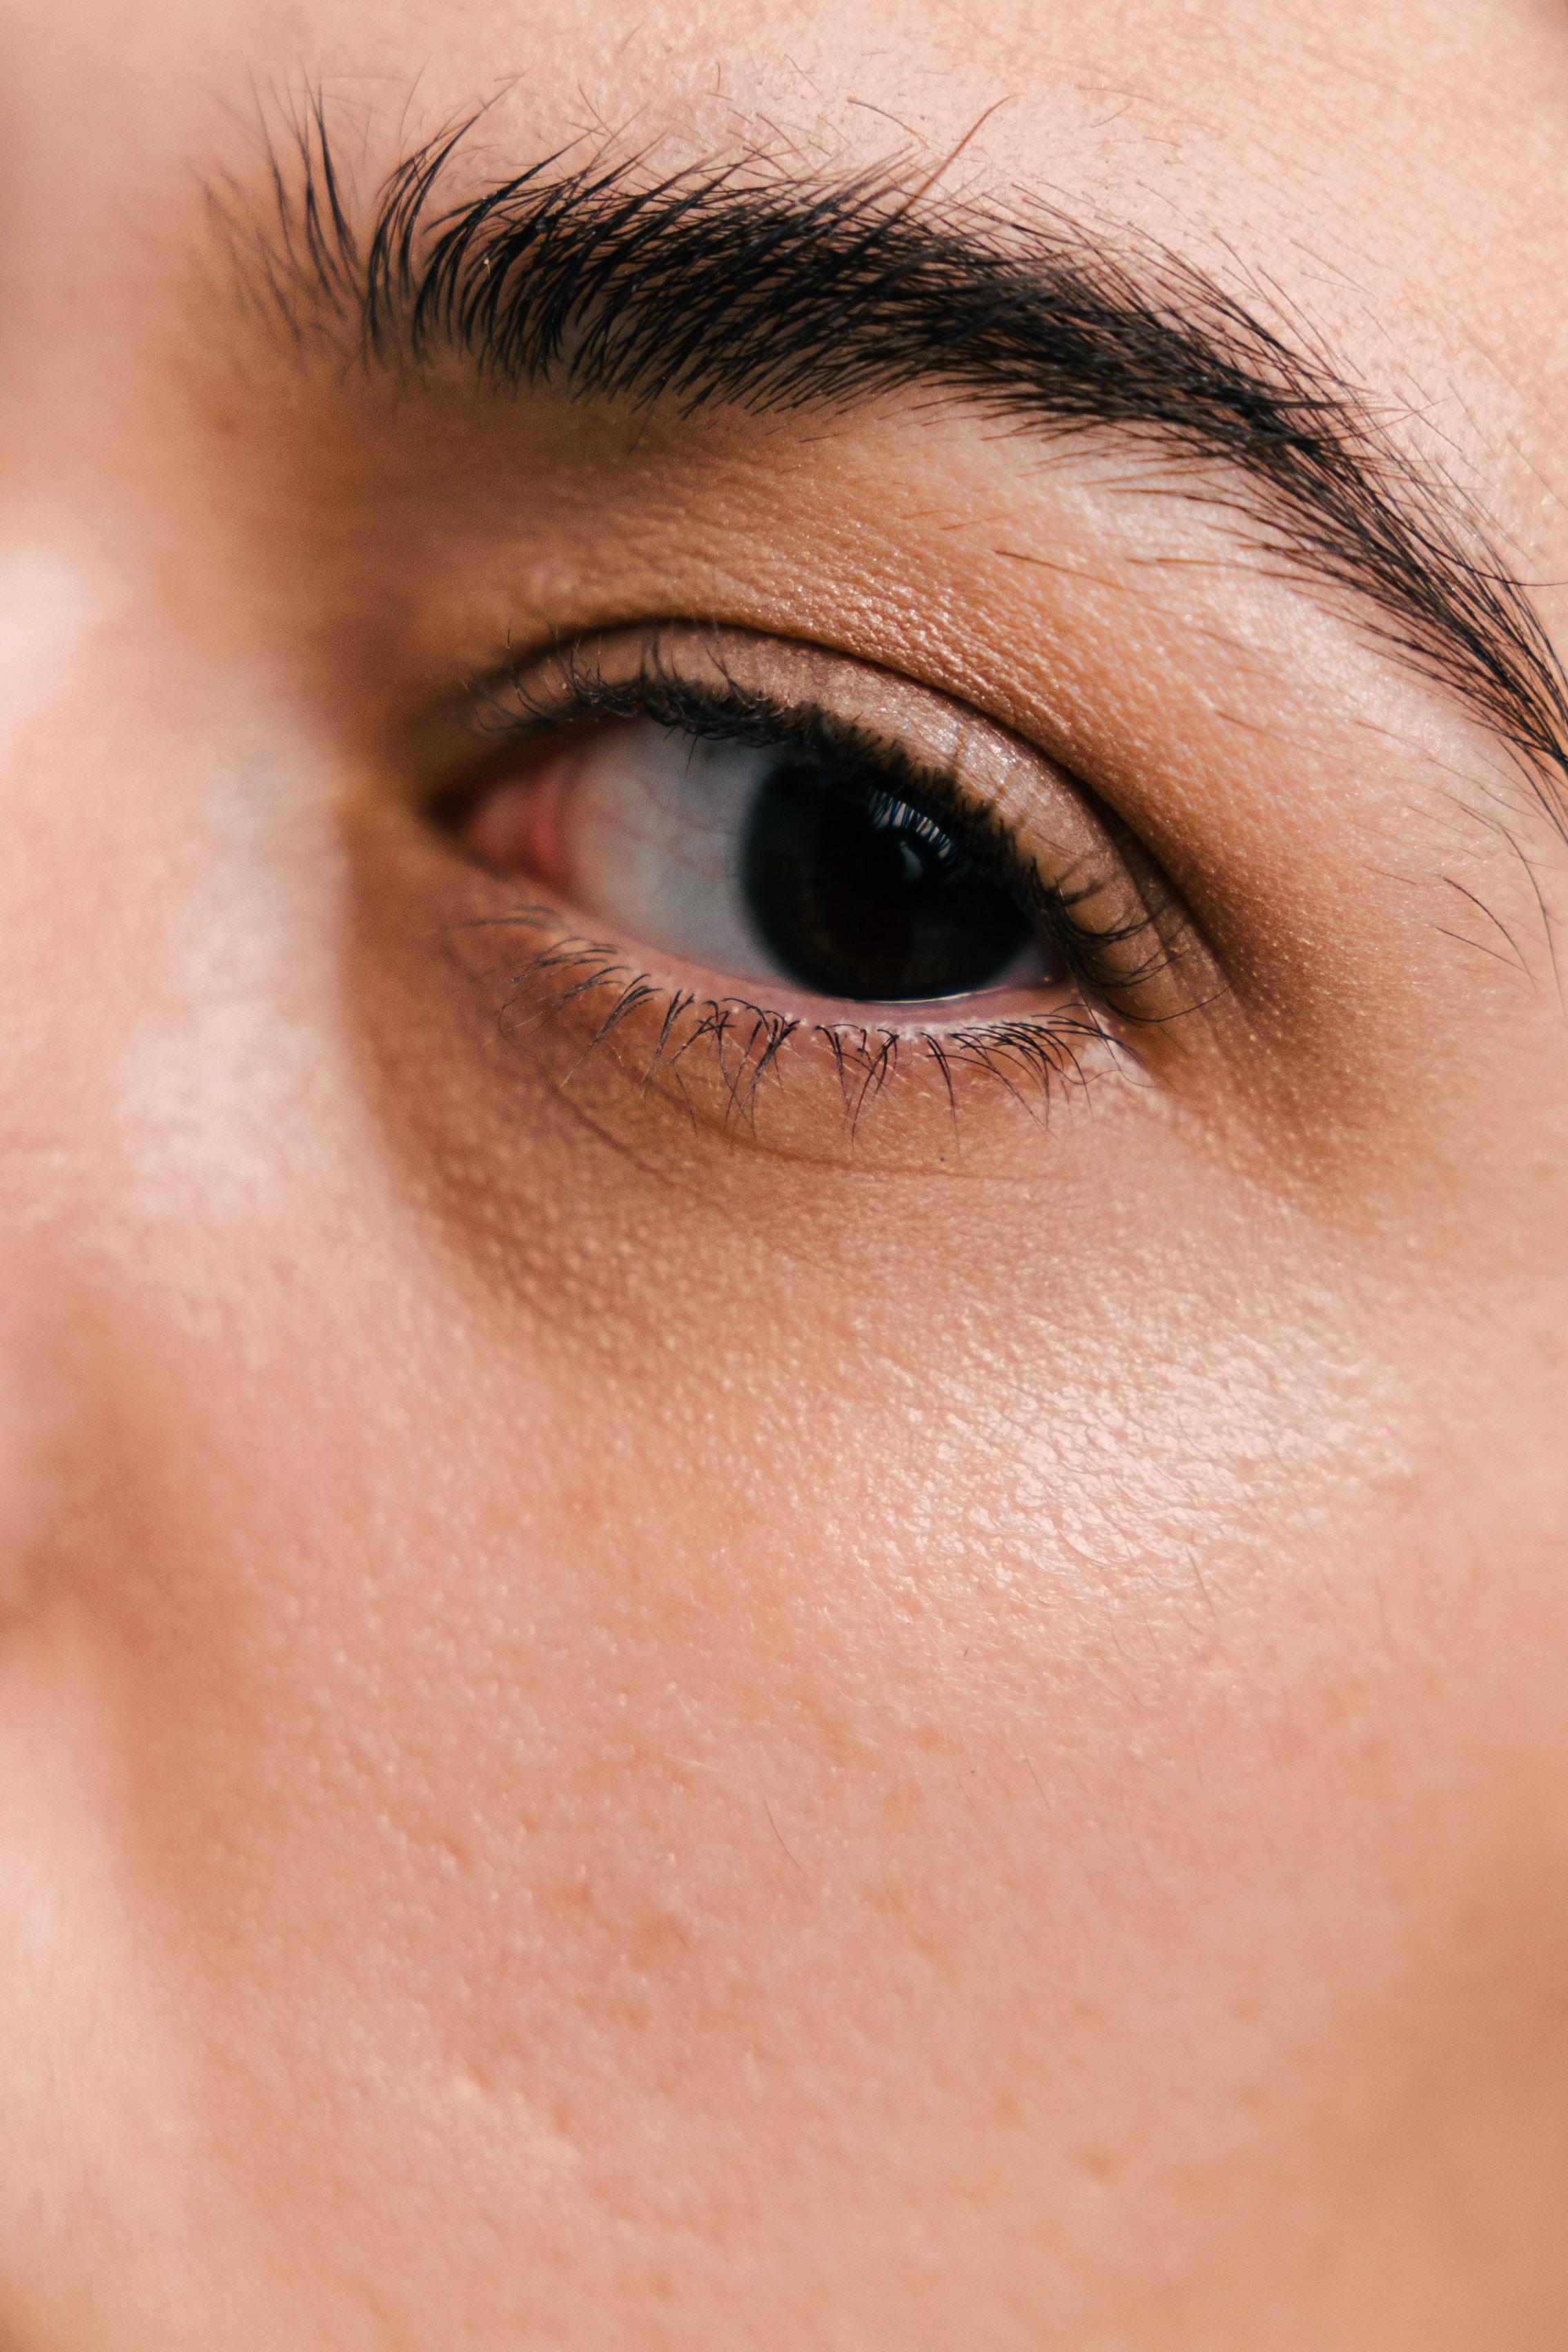 Witaminy na wzrok - jakie witaminy mają wpływ na dobry wzrok? Witaminy na oczy i wzrok - co jeść na dobrą kondycję oczu? Witaminy dla oczu. Jakie witaminy pomagają na poprawę wzroku